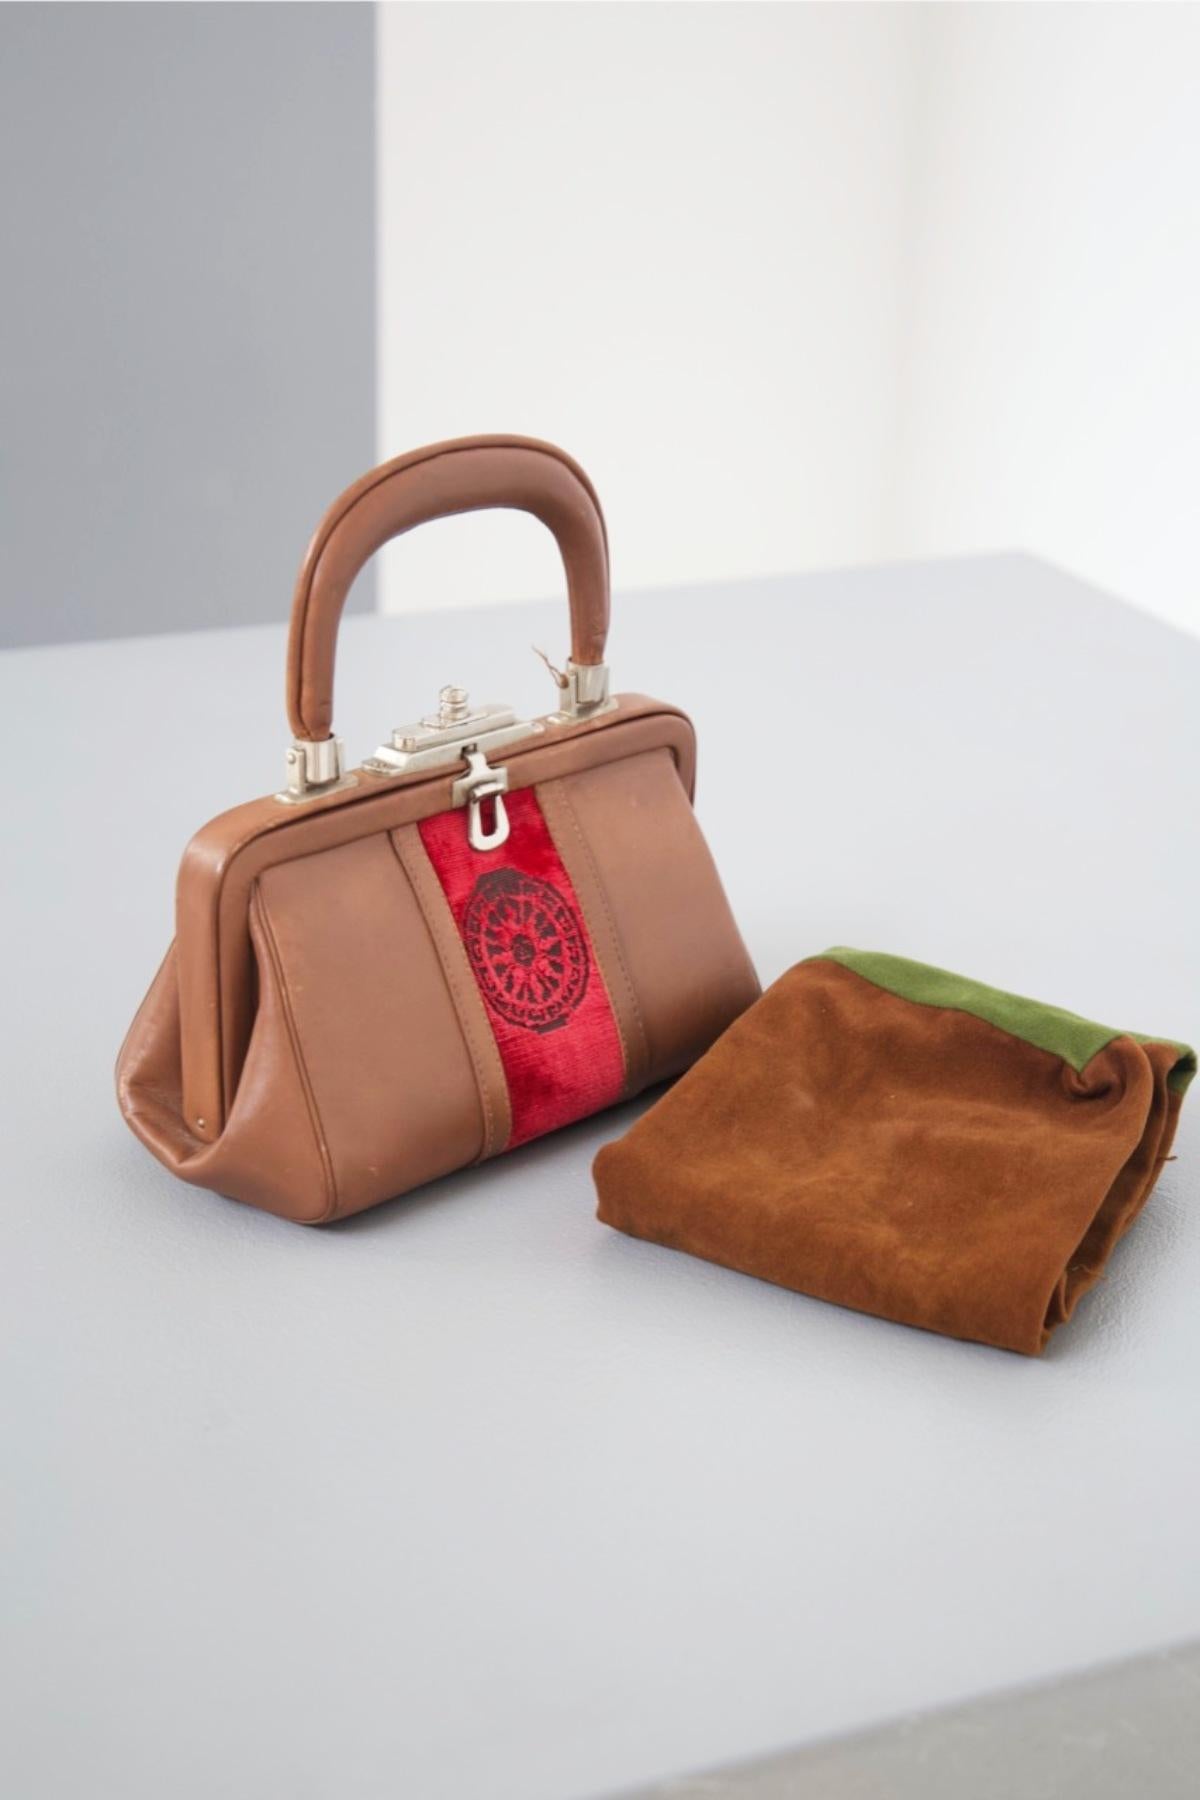 Super elegante kleine Handtasche aus Samt, entworfen von Marina Di Camerino in den 1970er Jahren, feine italienische Handwerkskunst.
ORIGINAL LABEL.
Die Handtasche ist klein und eignet sich aufgrund ihrer zeitlosen Eleganz für Abendveranstaltungen